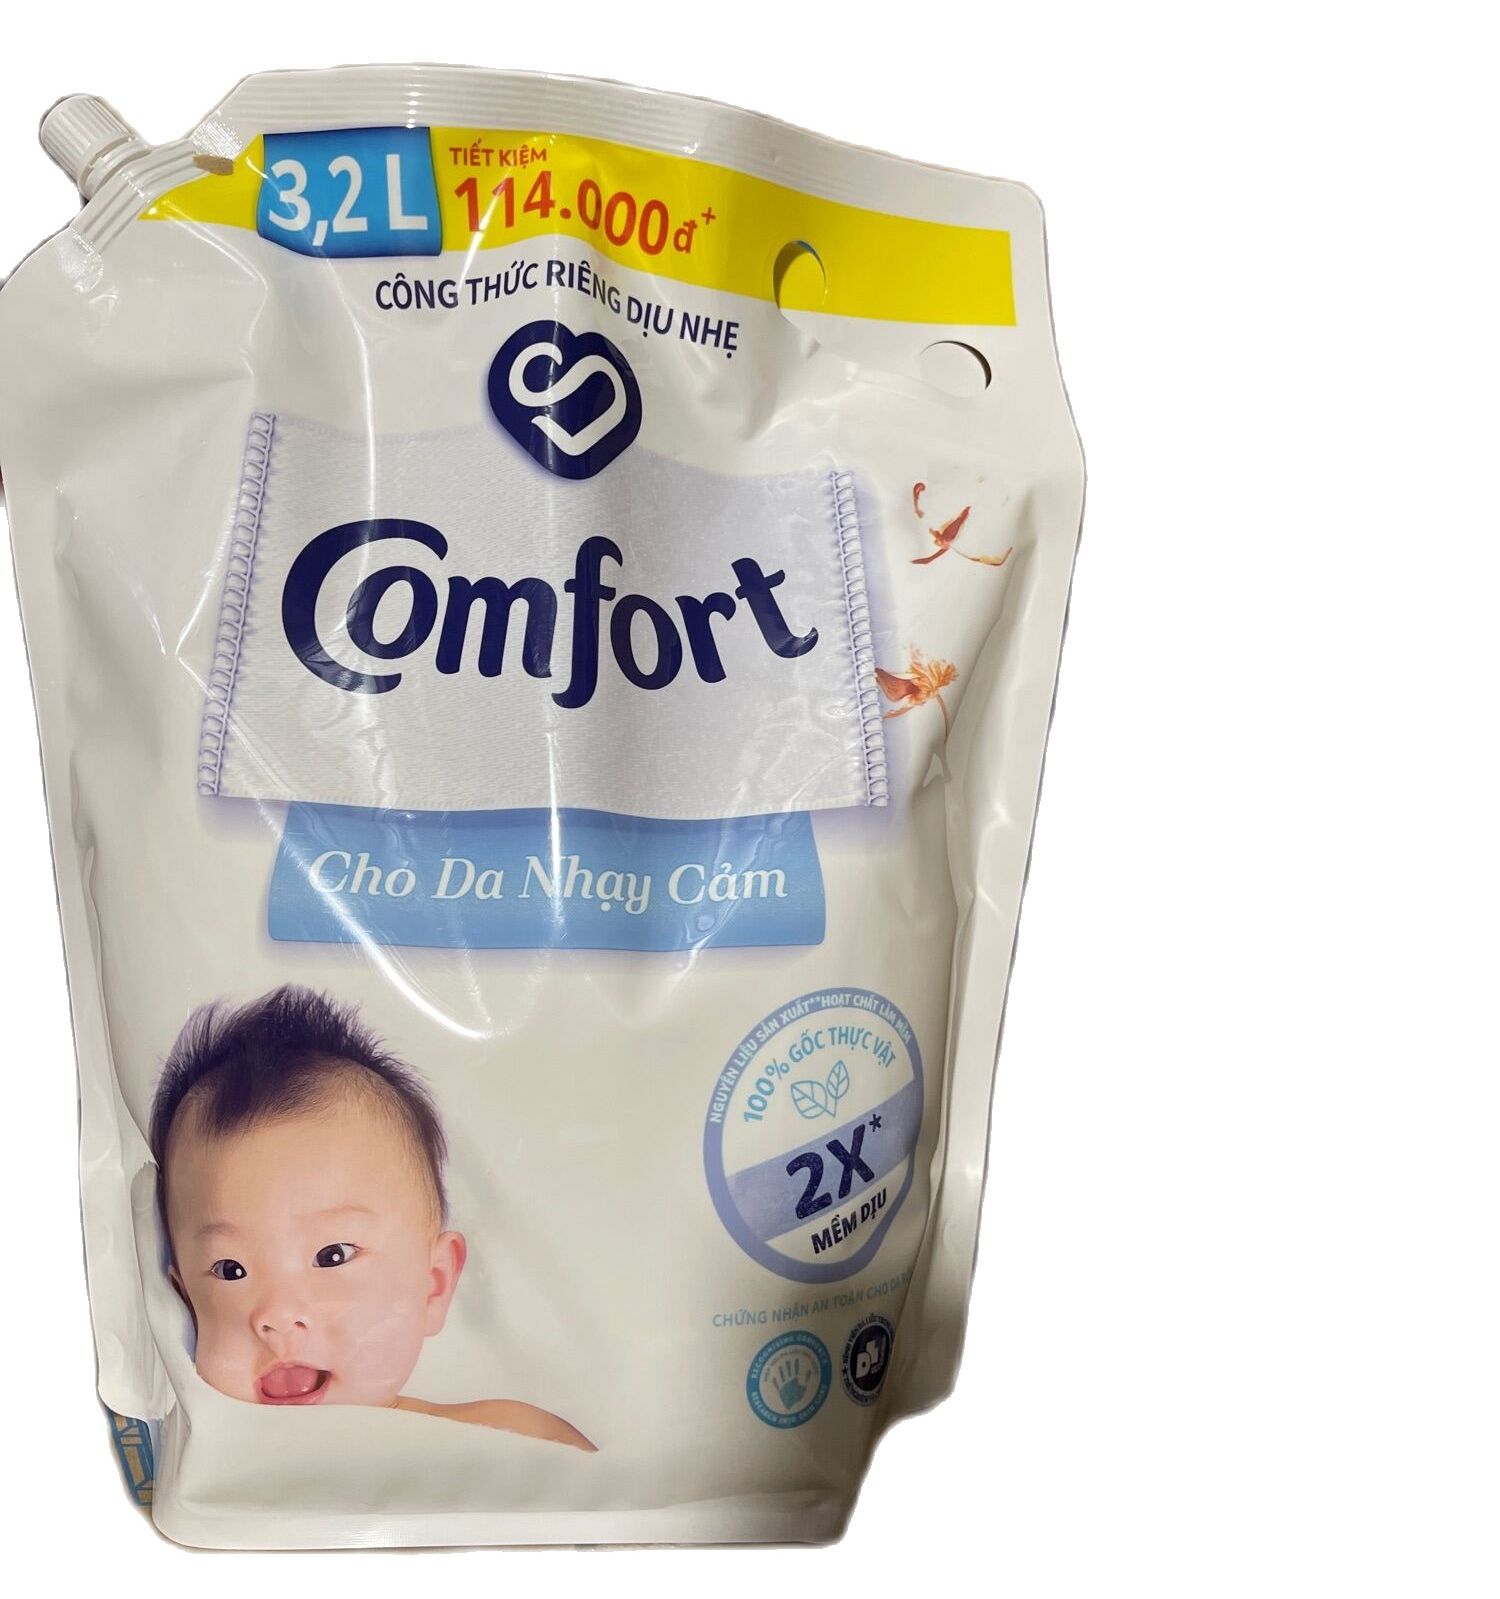 Nước xả vải Comfort em bé cho da nhạy cảm 3.2l mới  giá mới